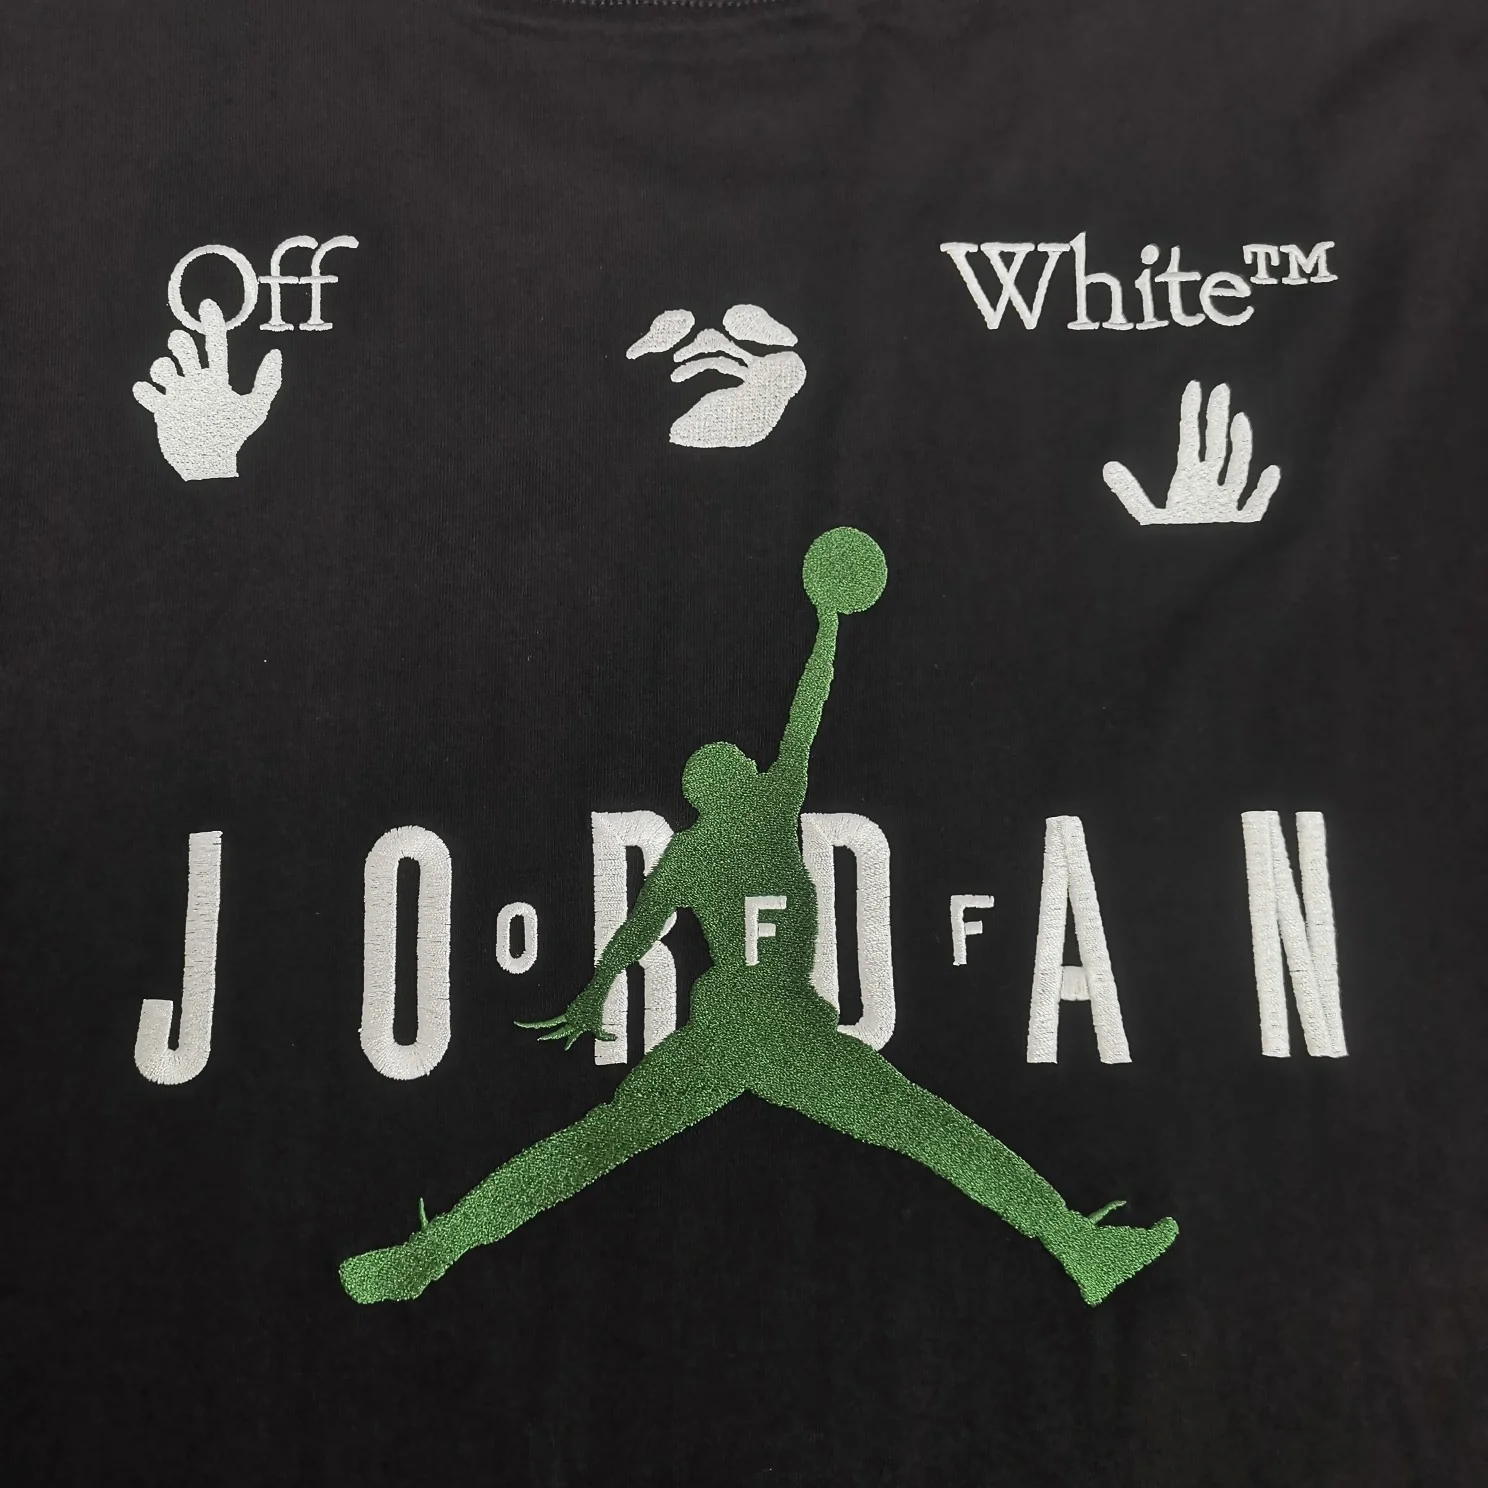 Off-White x Jordan T-shirt オフホワイト Tシャツ コラボ オーバー 